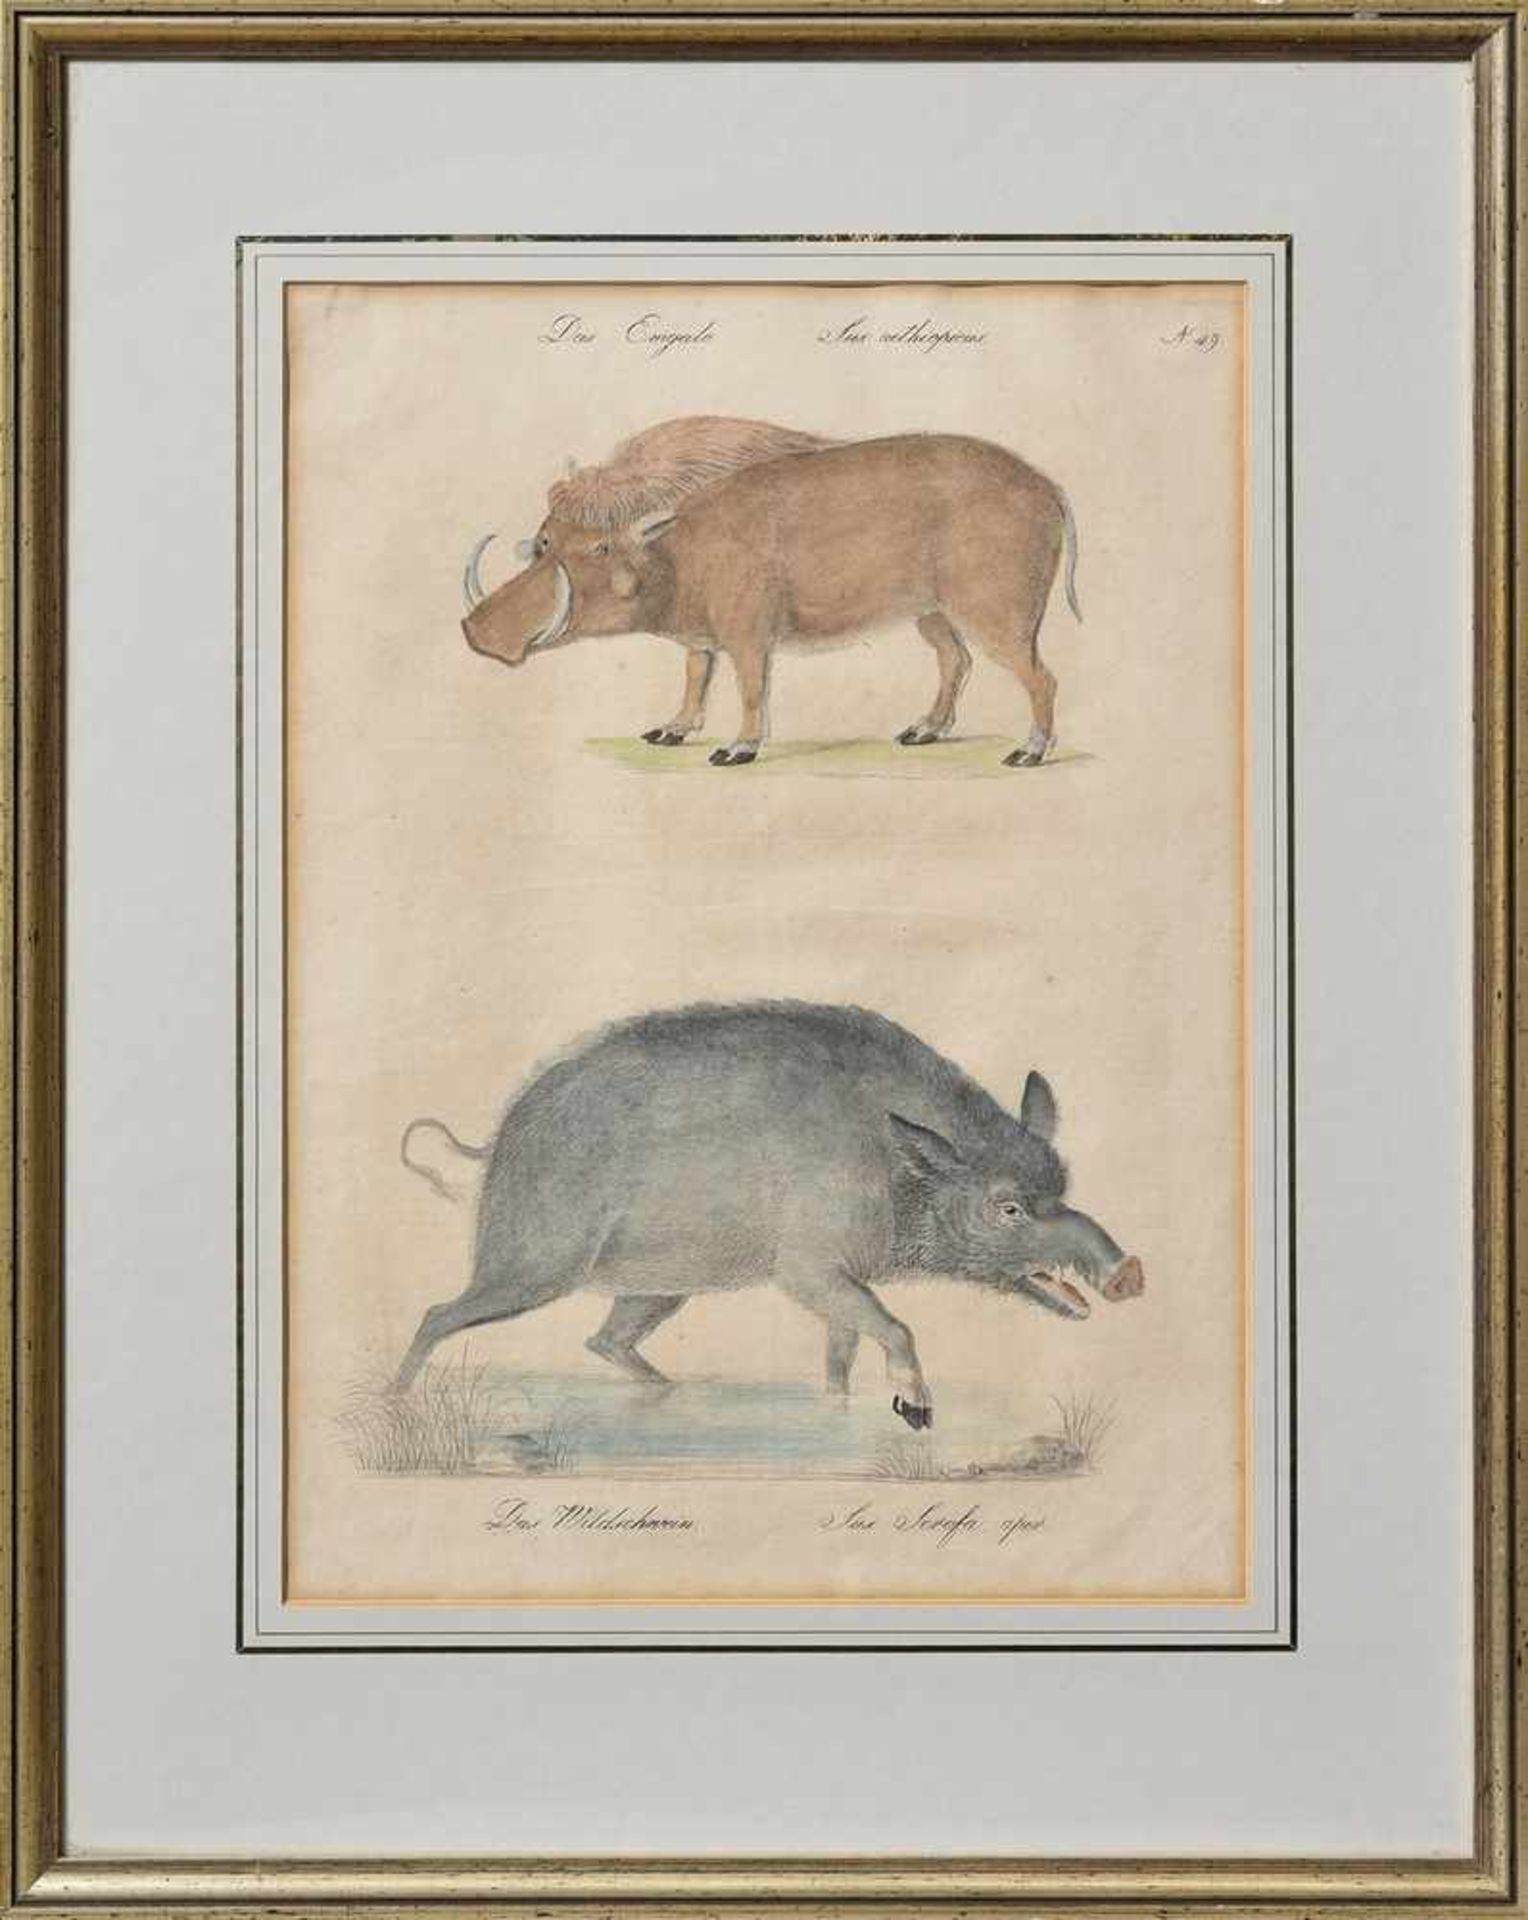 Brodtmann, Carl Joseph (1787-1862) "Das Emgalo. Das Wildschwein", Tafel 49, colorierte Lithographie, - Bild 2 aus 2